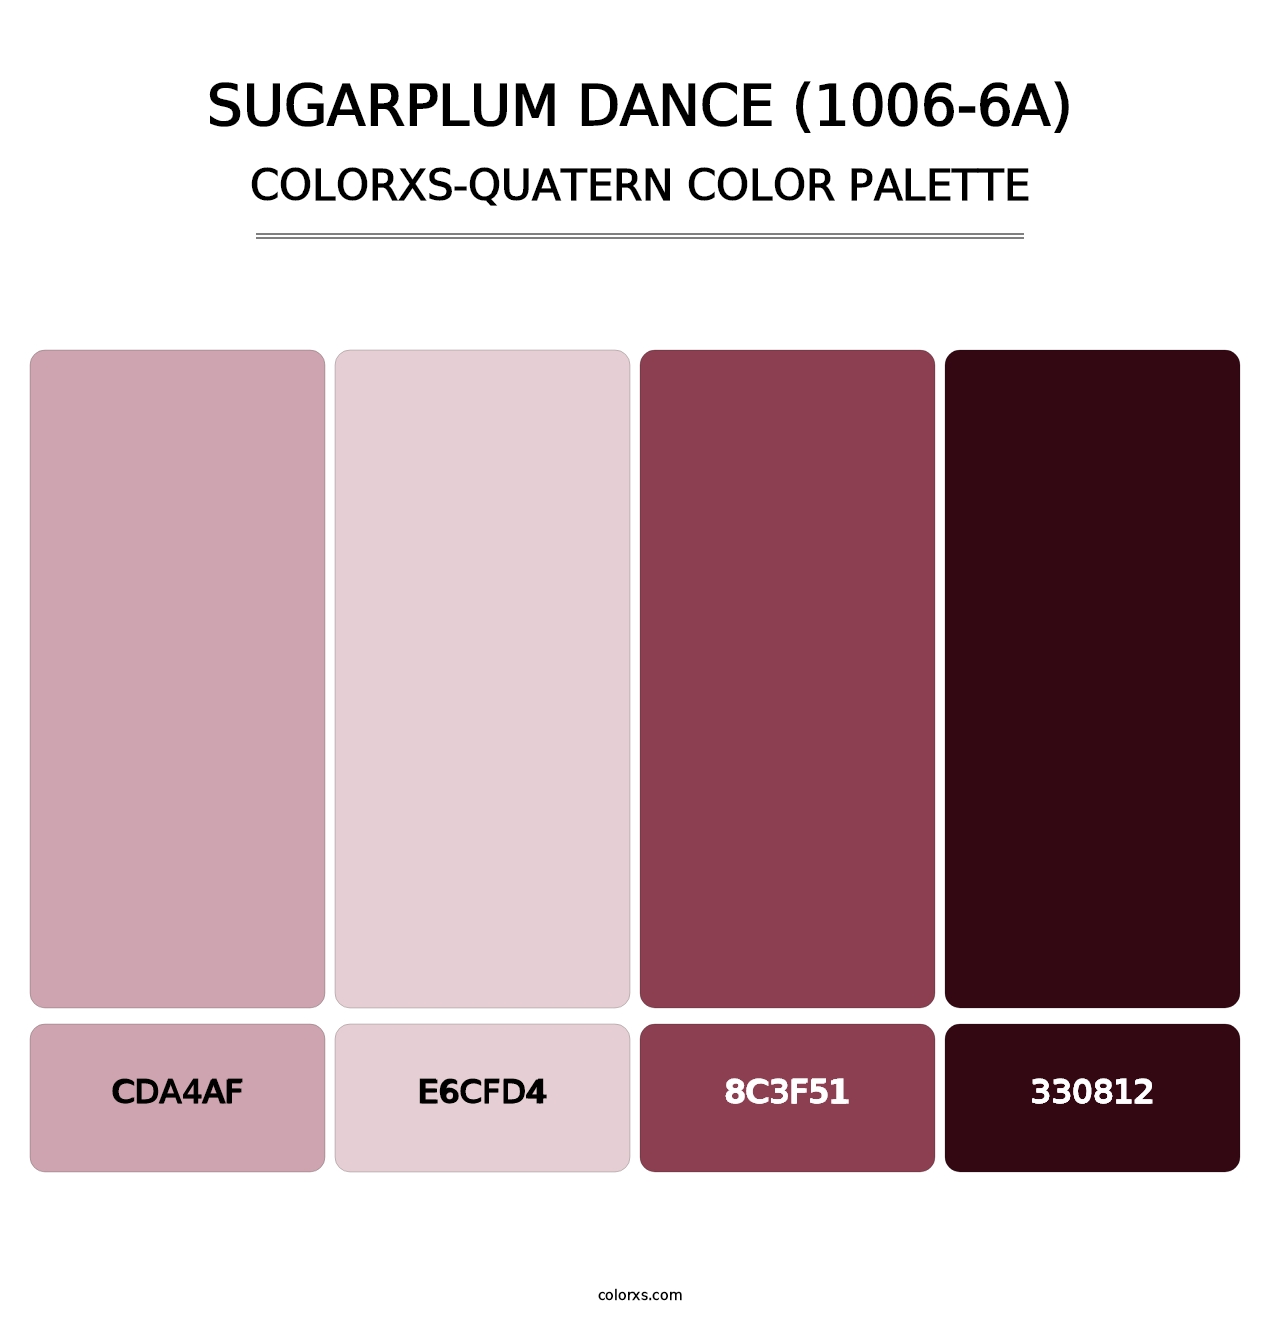 Sugarplum Dance (1006-6A) - Colorxs Quatern Palette